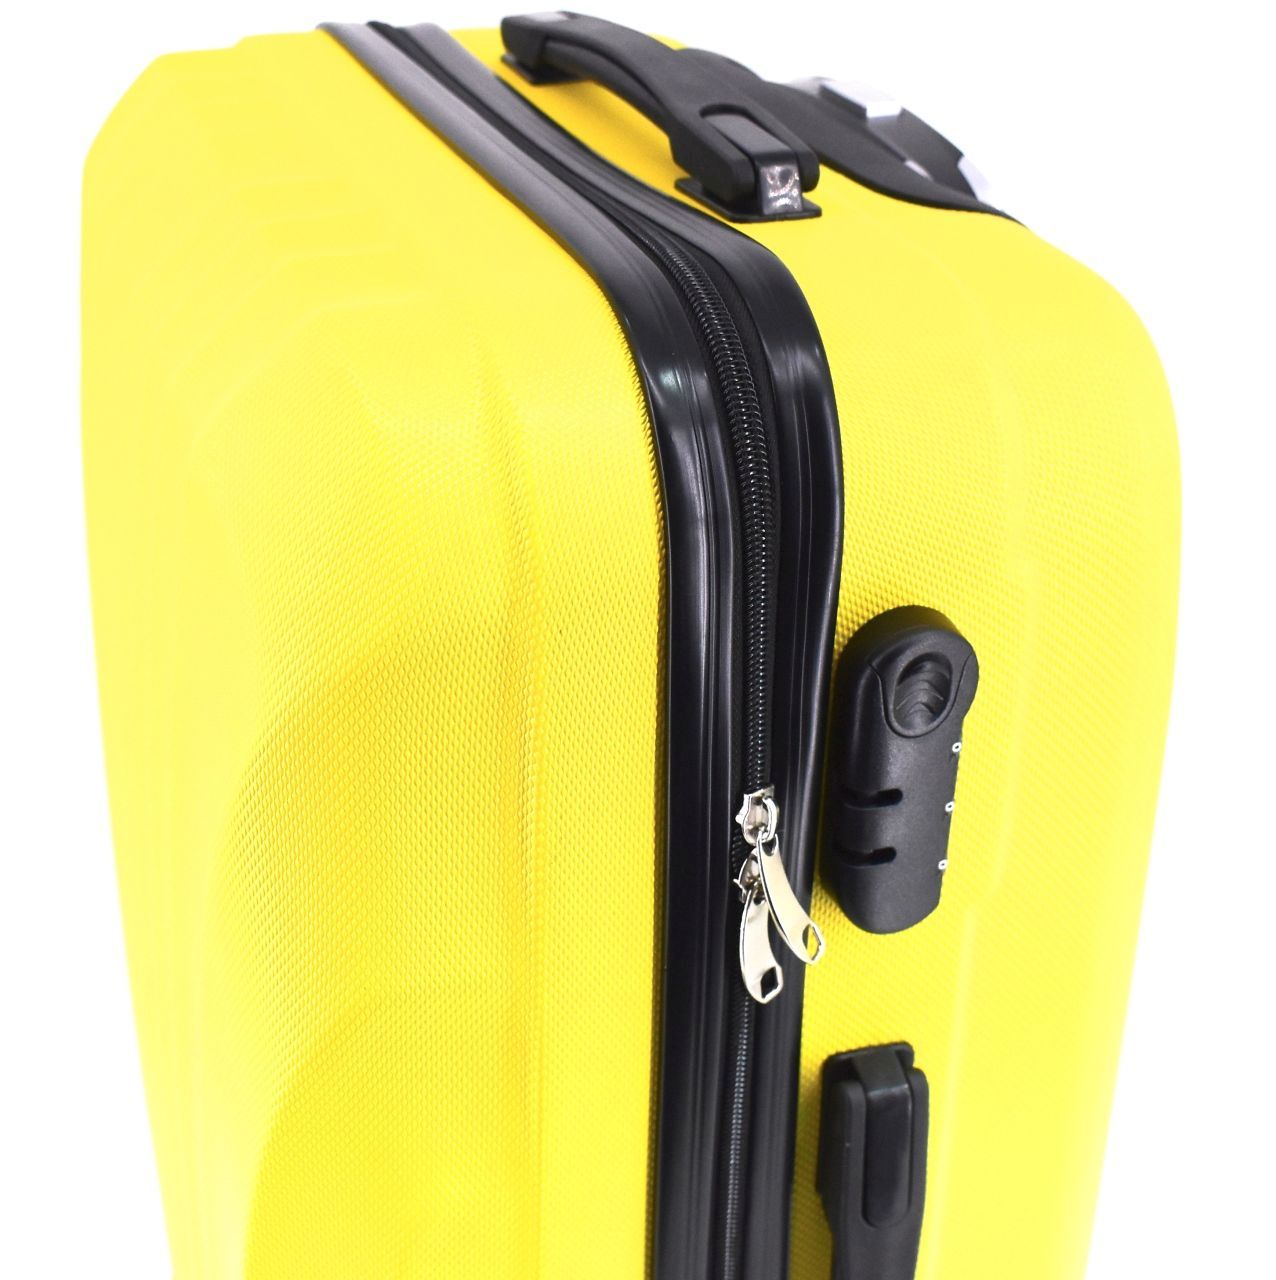 Cestovní skořepina kufr na čtyřech kolečkách Arteddy - (M) 60l fuxia 6020 (M)